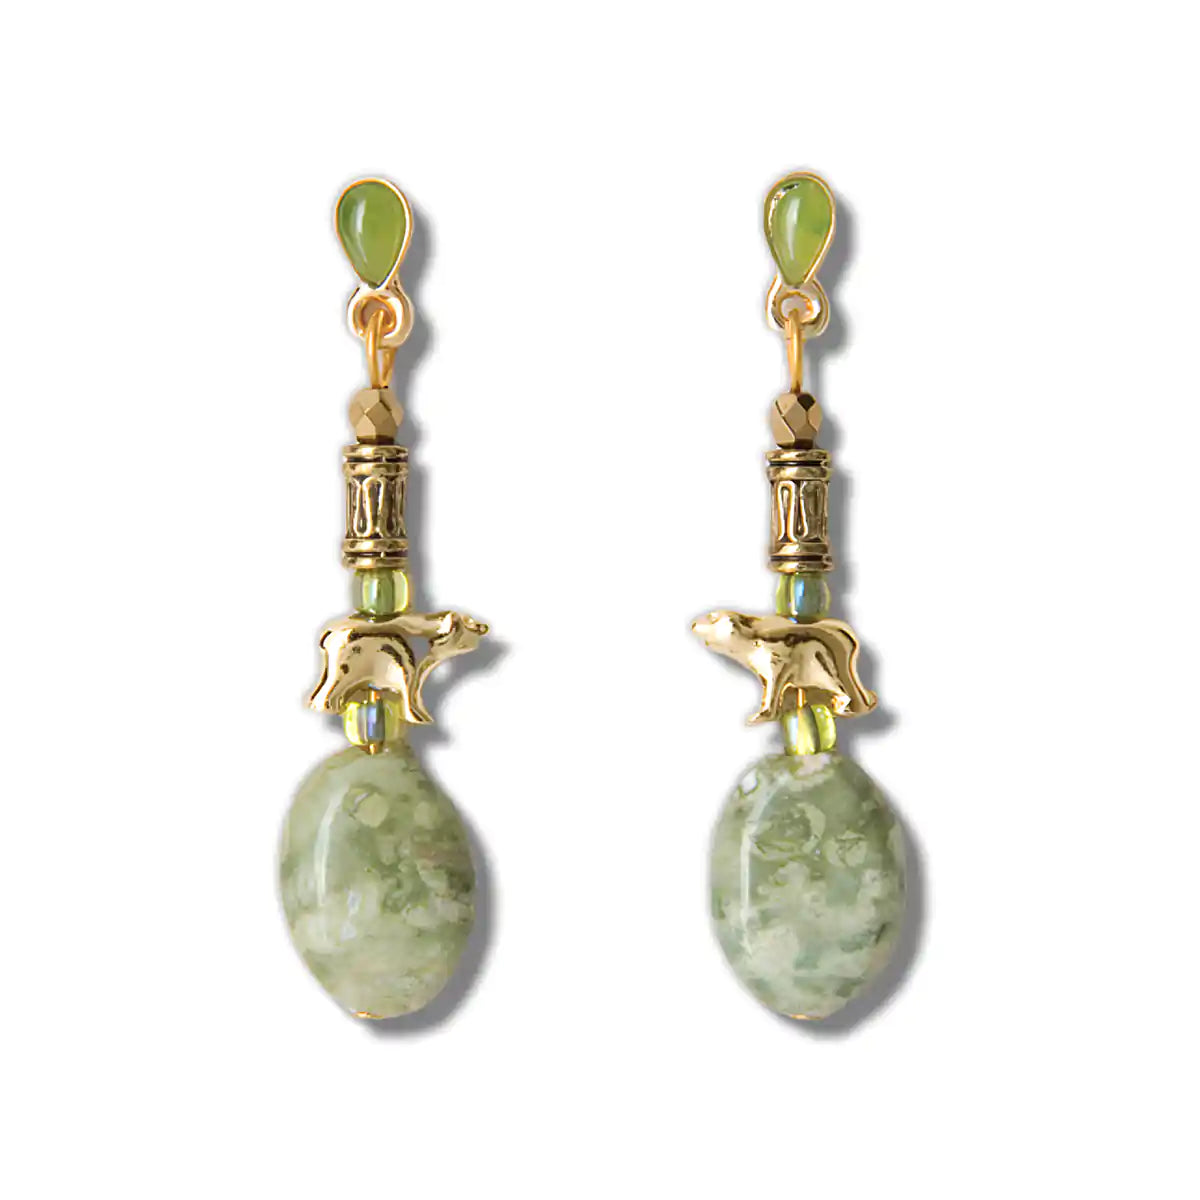 Jade mountain bear earrings